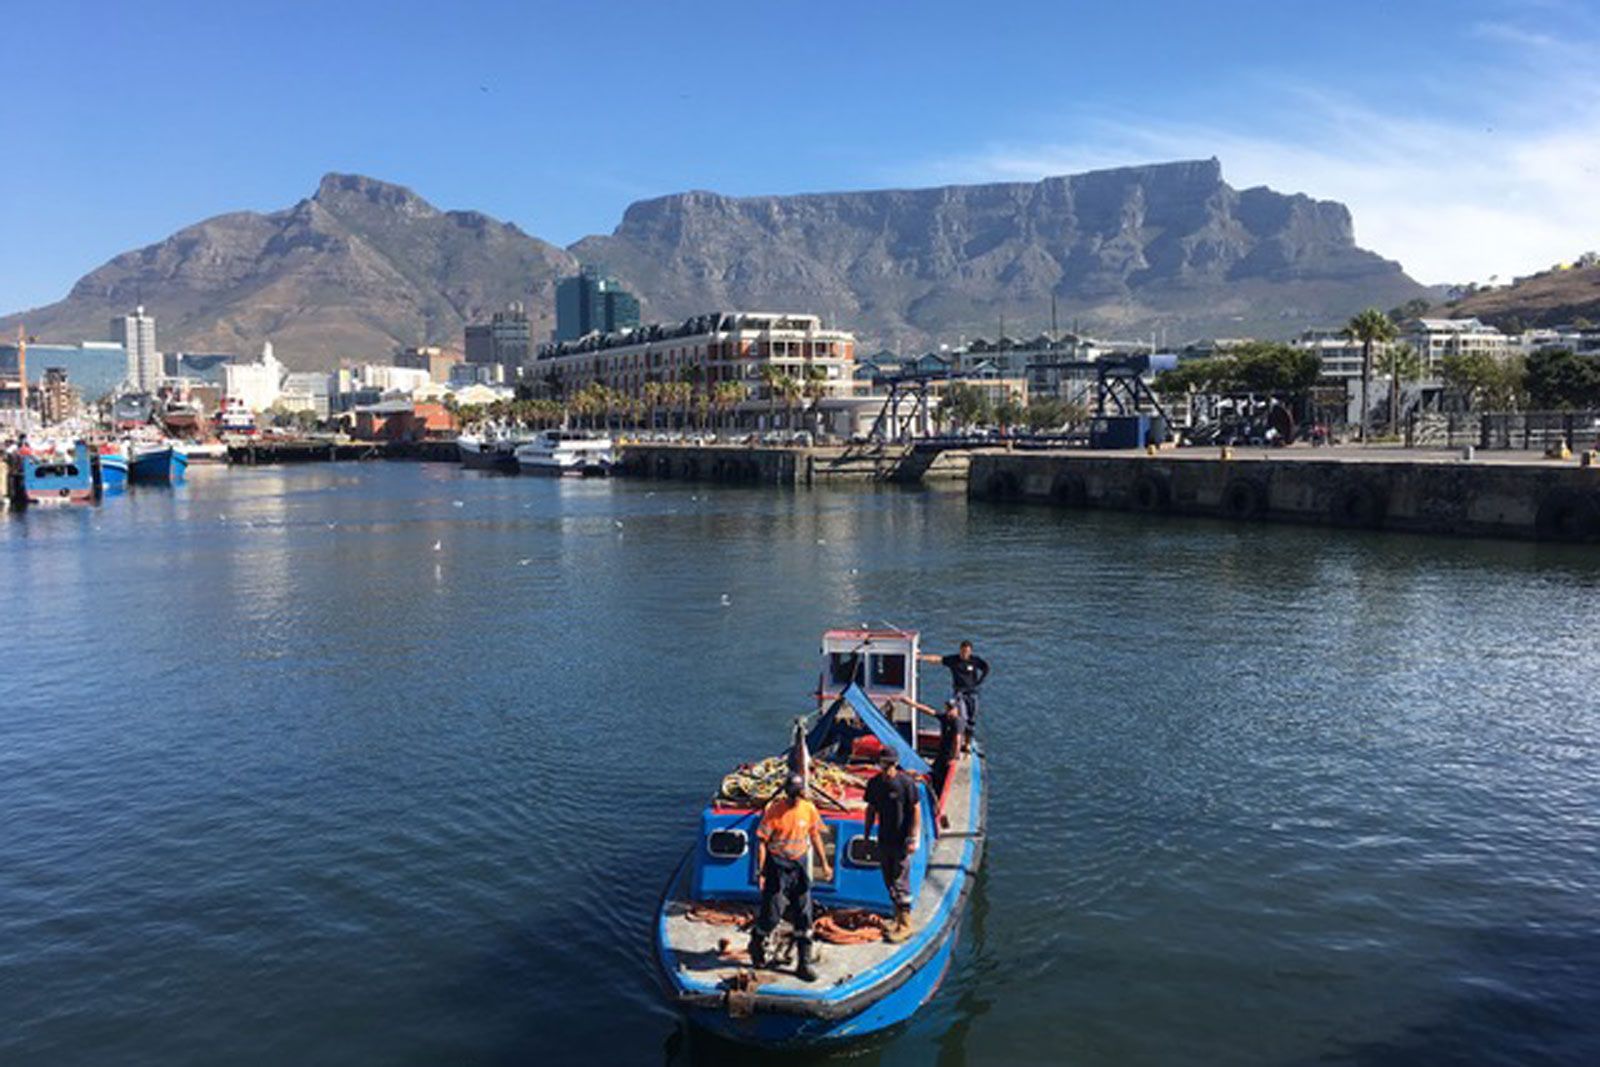 Komfort am Kap: Neues Angebot für einen entspannten Südafrikaaufenthalt 